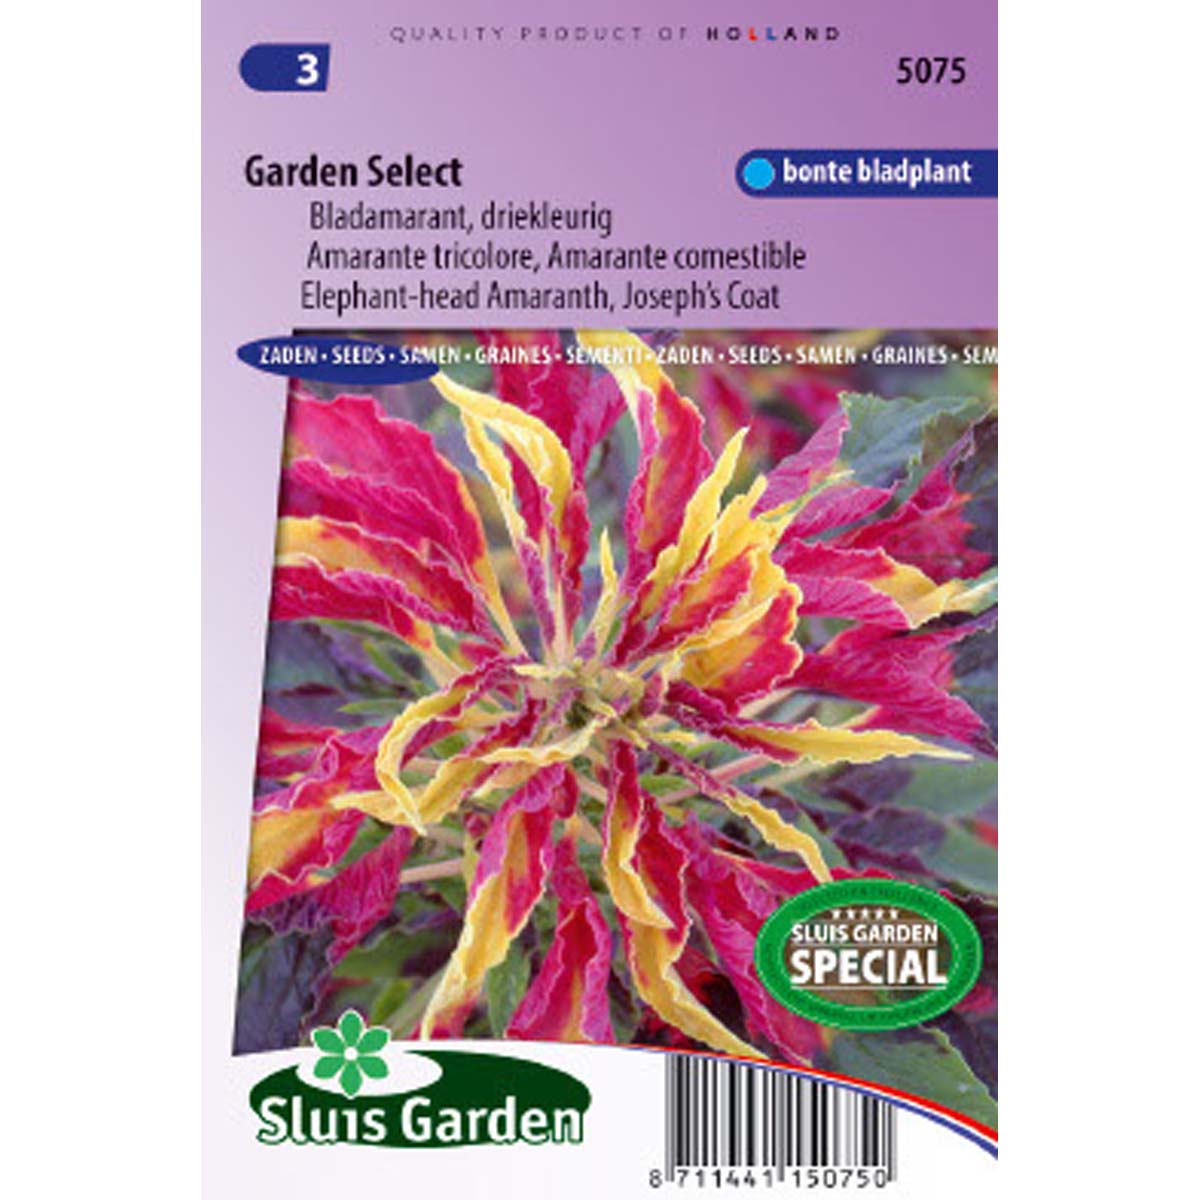 Graine d'Amaranthus tricolor - Amarante Garden Select